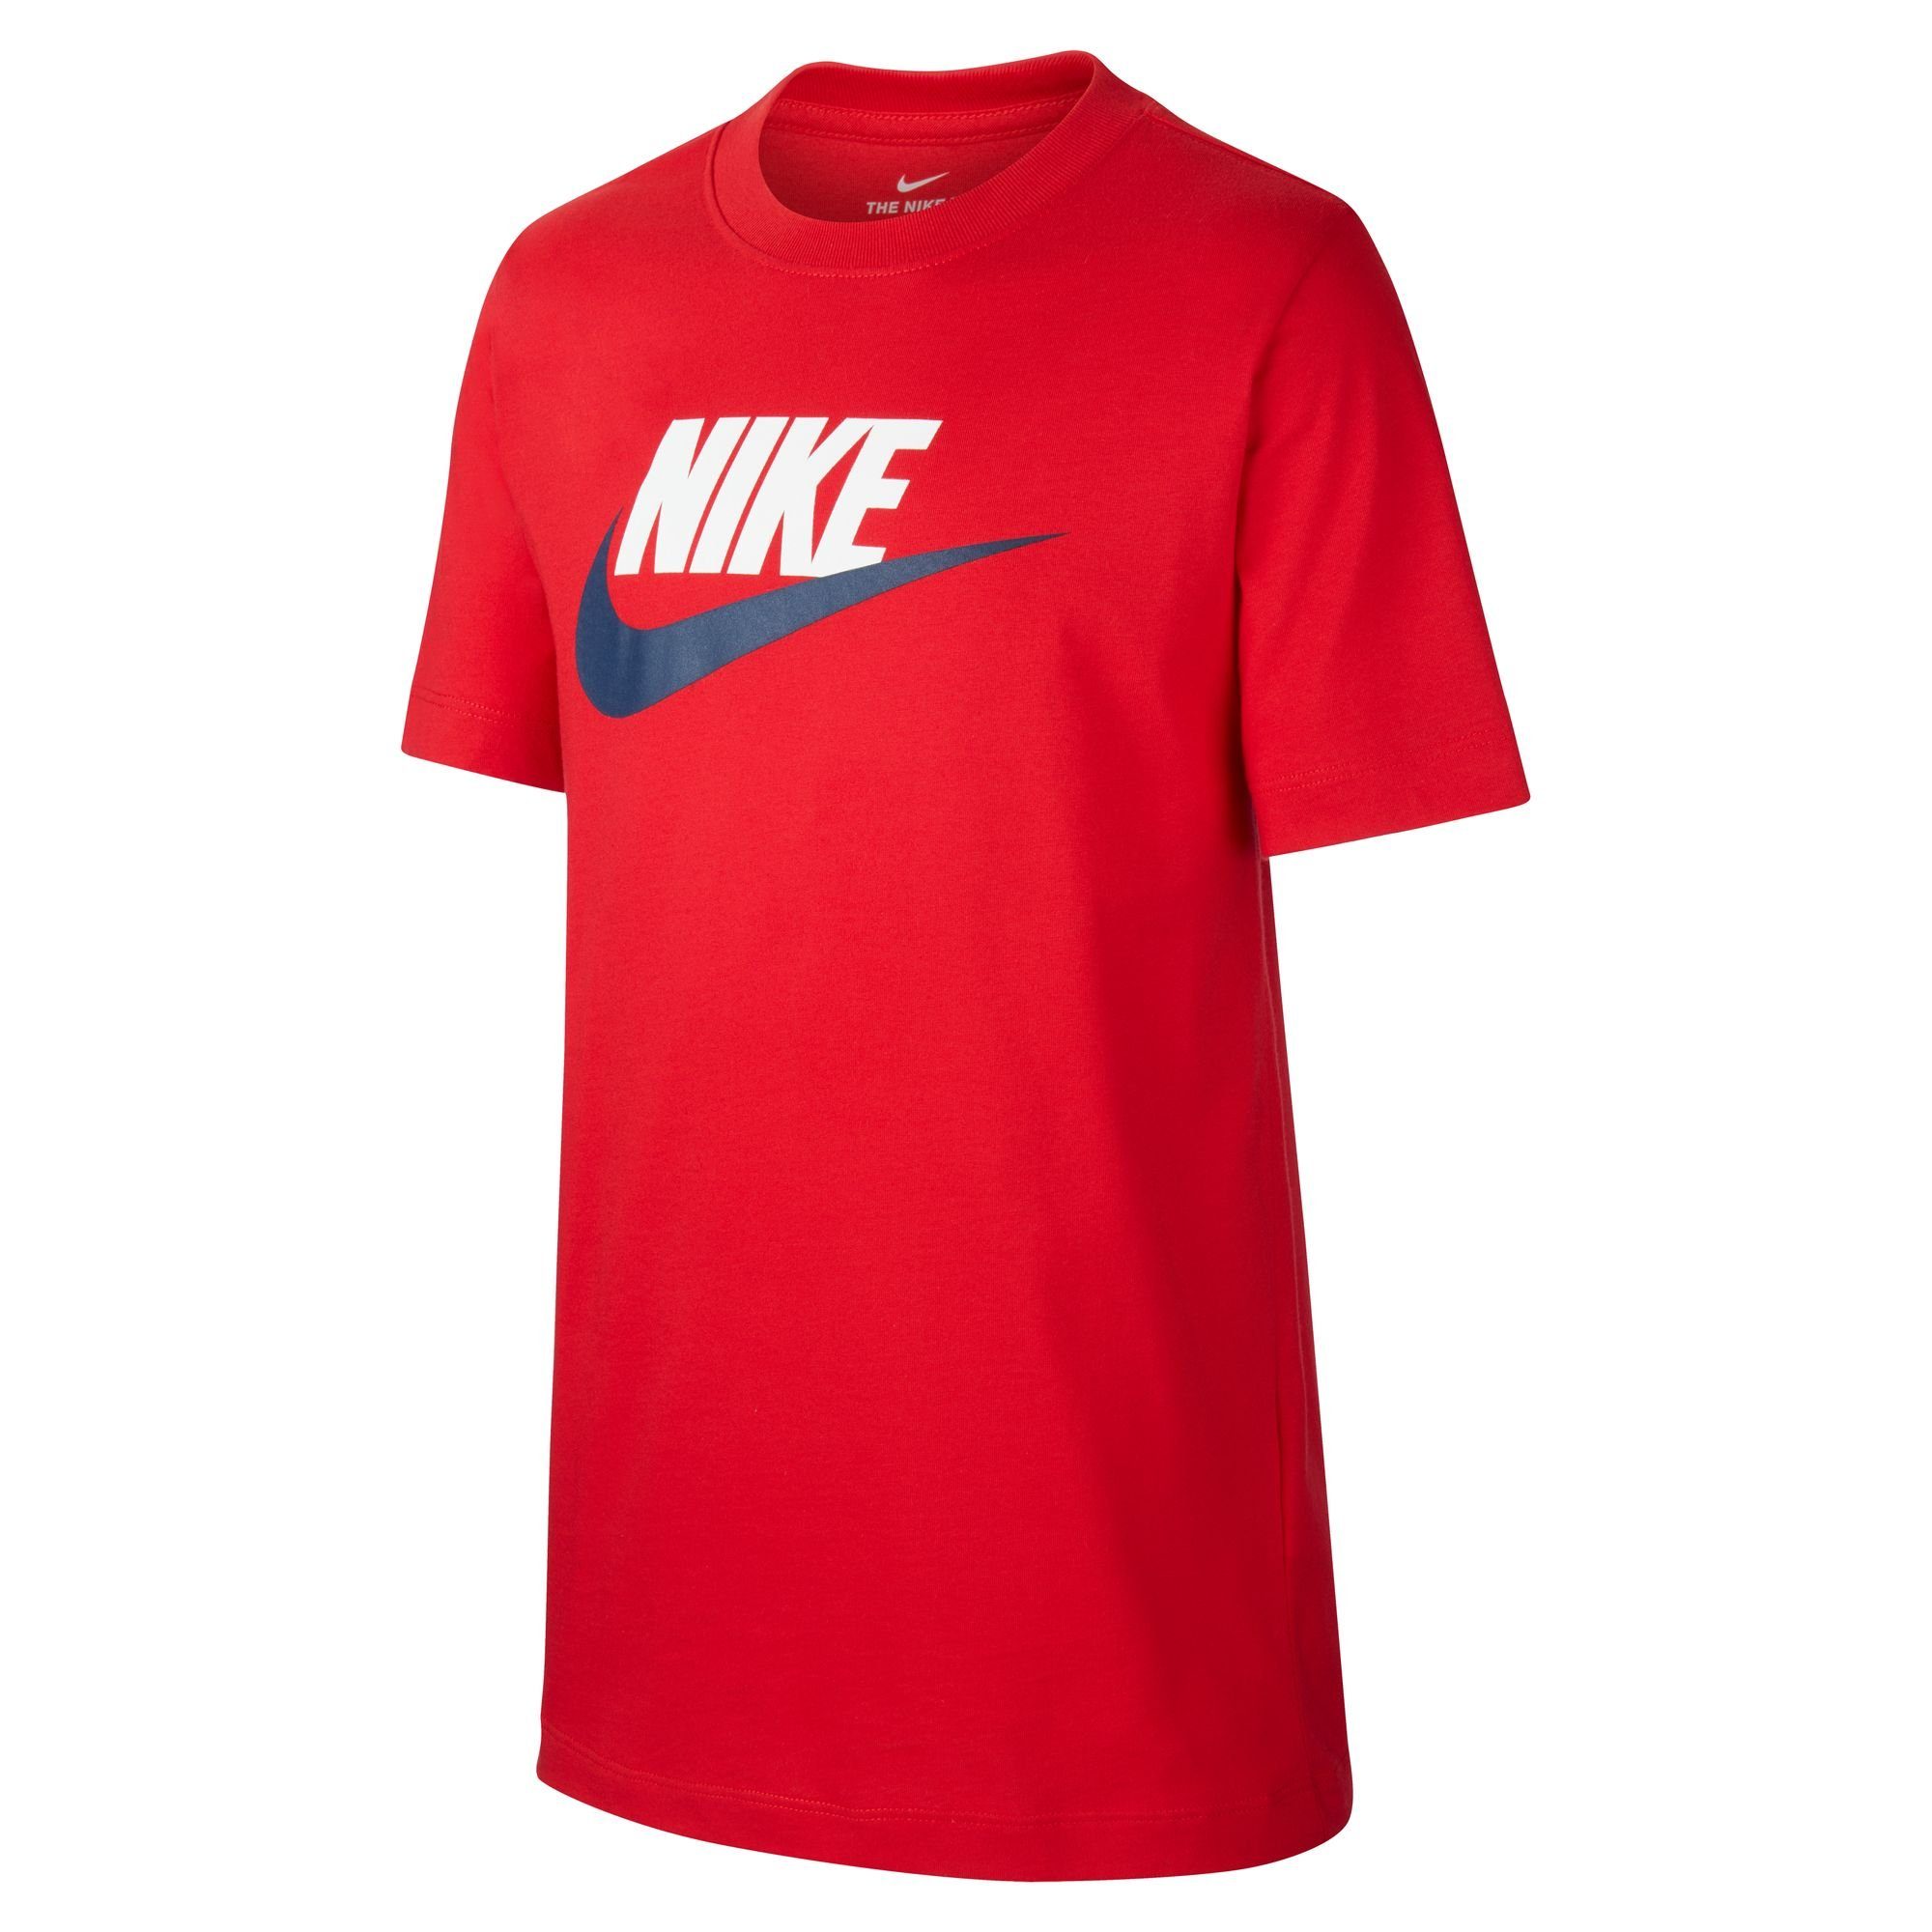 KIDS' rot T-Shirt T-SHIRT COTTON Nike BIG Sportswear